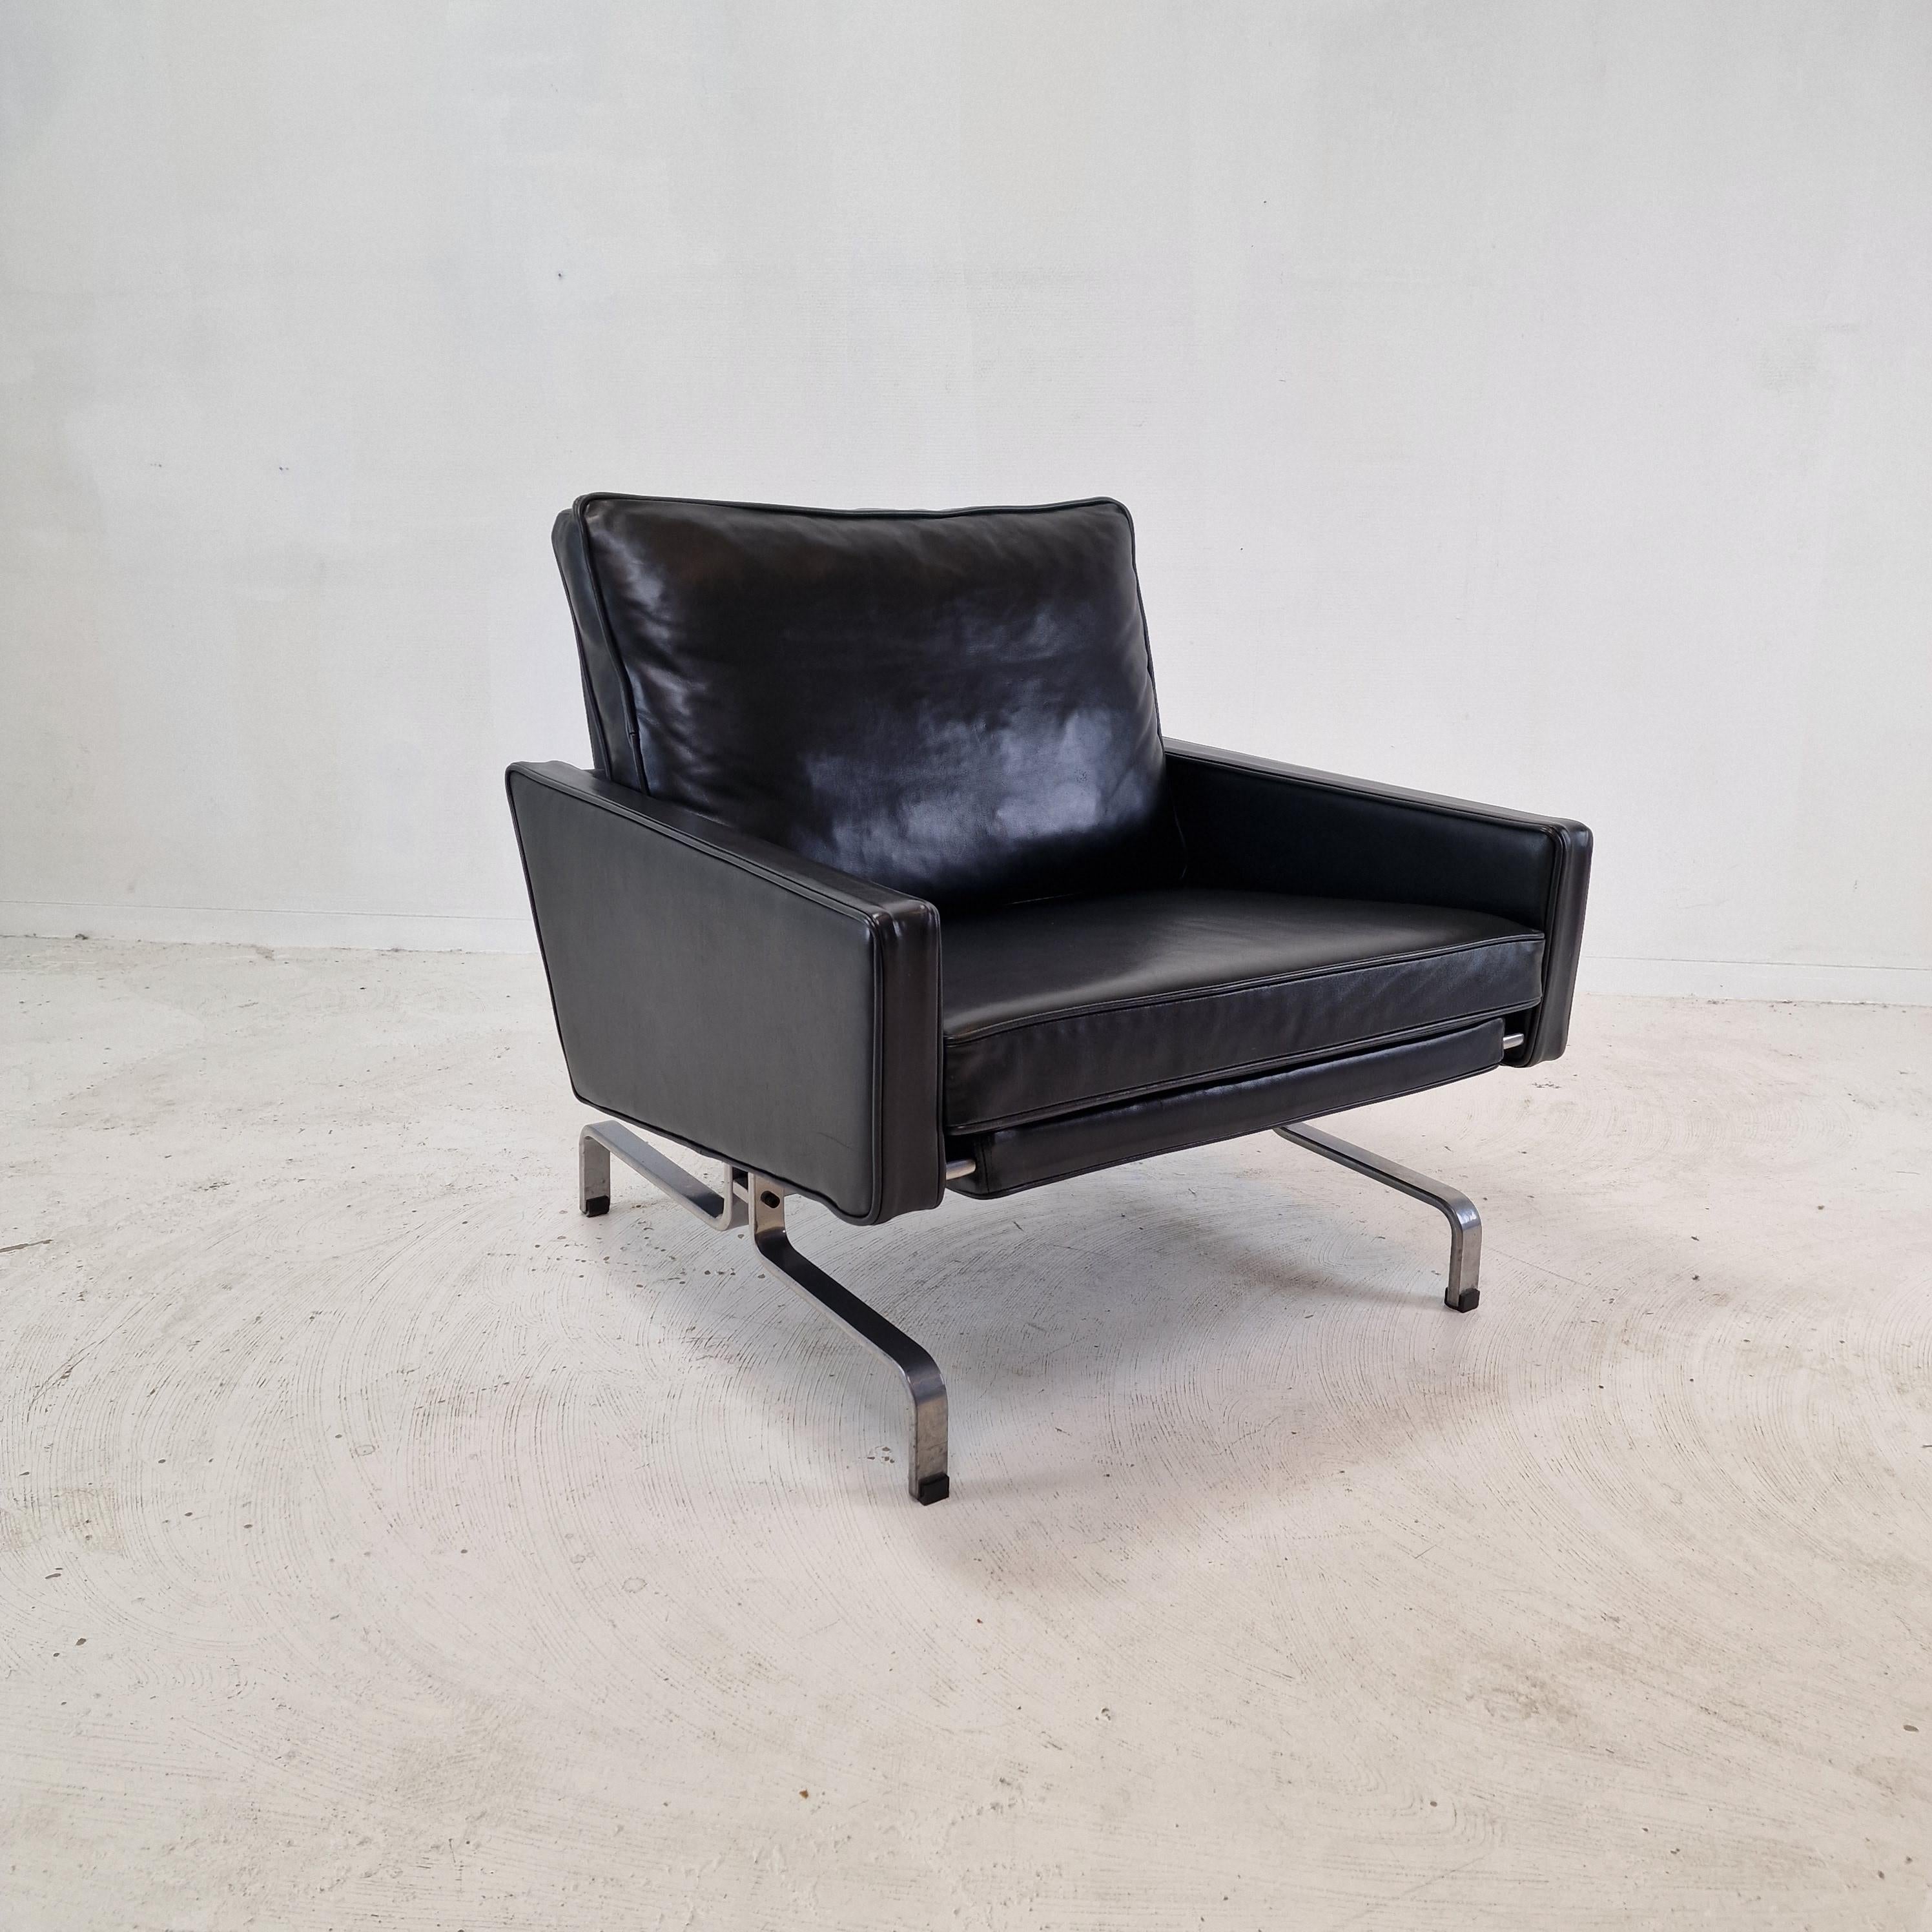 Mid-20th Century Poul Kjærholm PK-31 Easy Chair by E. Kold Christensen, Denmark, 1950's For Sale